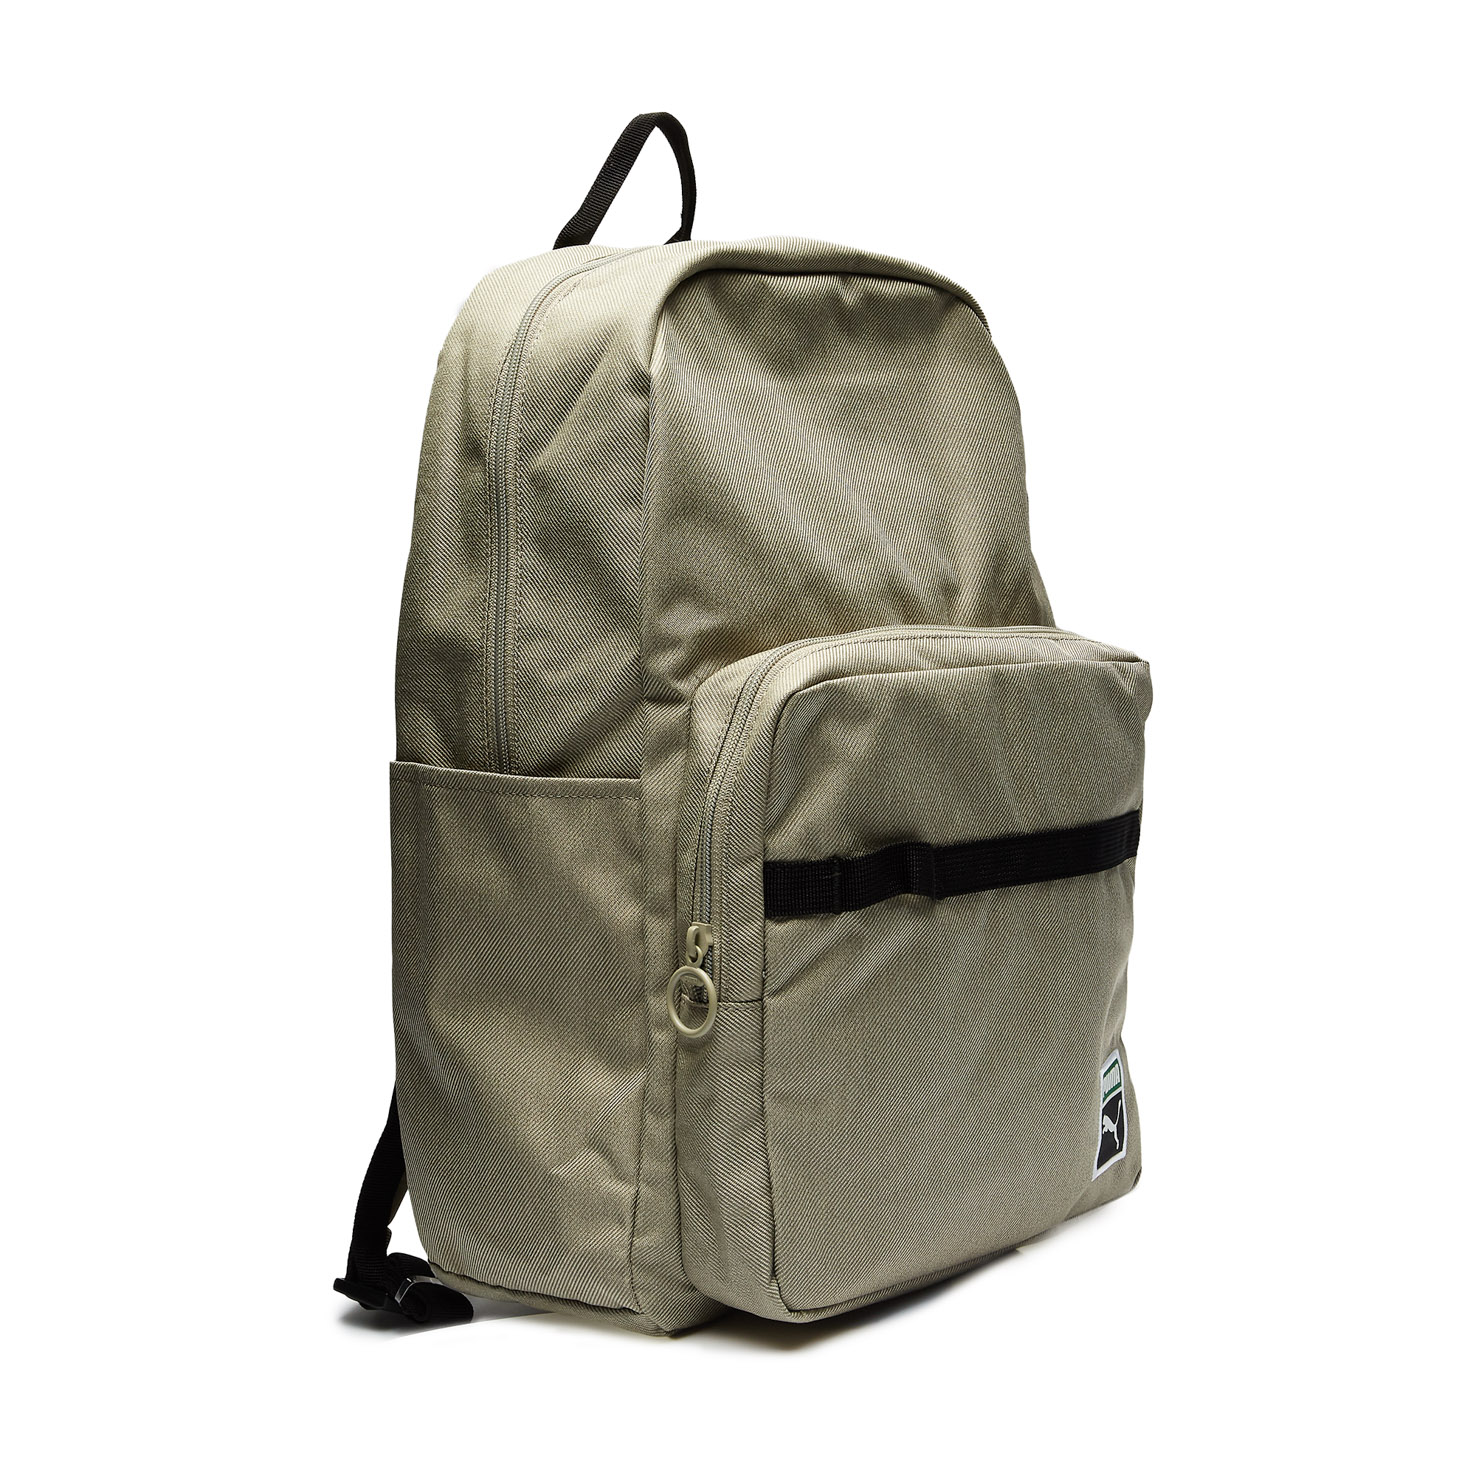 PUMA x PEANUTS Backpack PUMA, размер Один размер, цвет бежевый PM078009 - фото 3